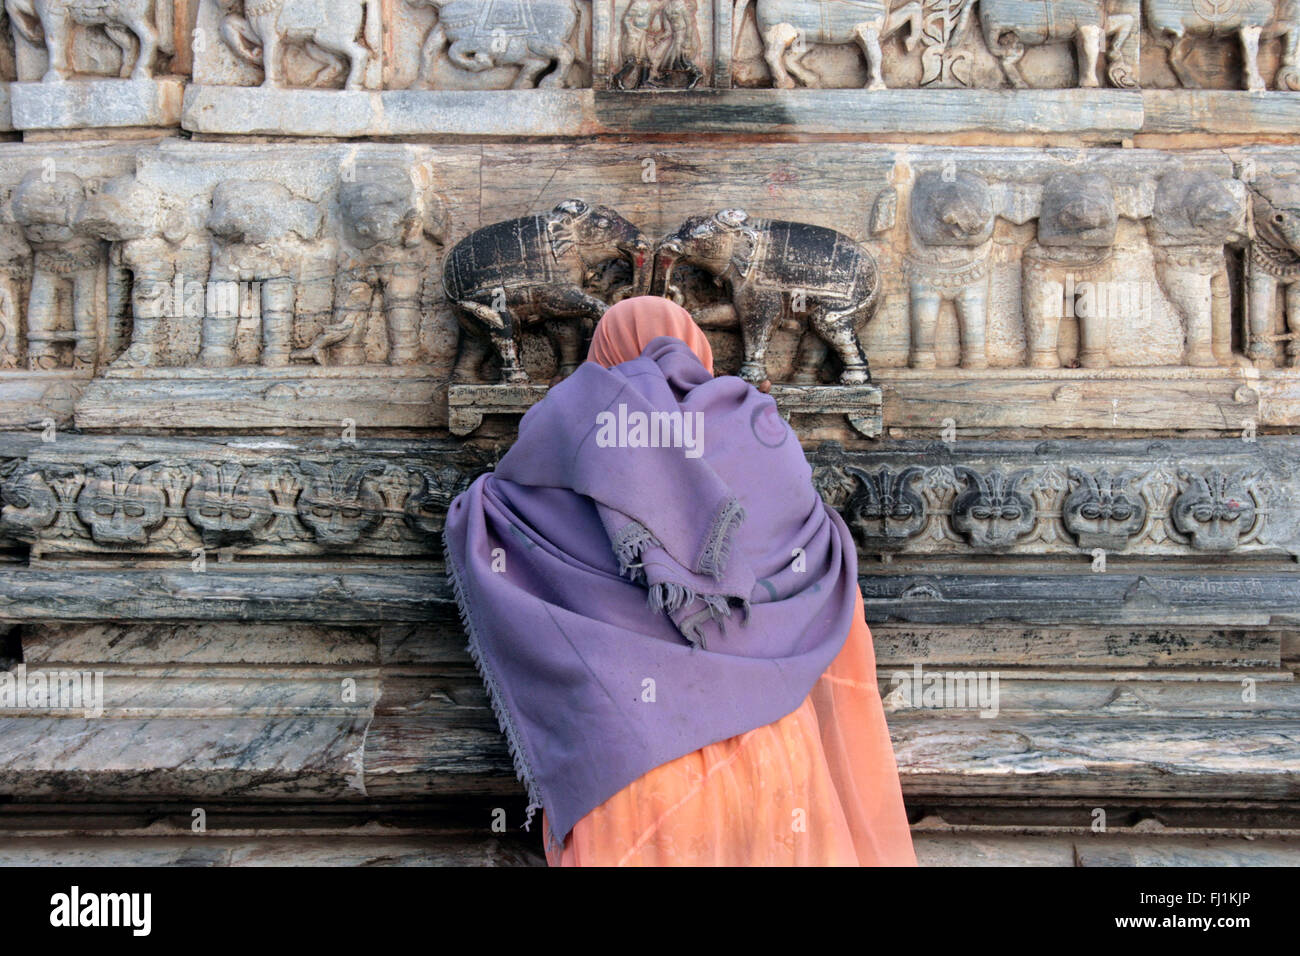 Woman praying at Jagdish Temple, Udaipur, Rajasthan, India Stock Photo